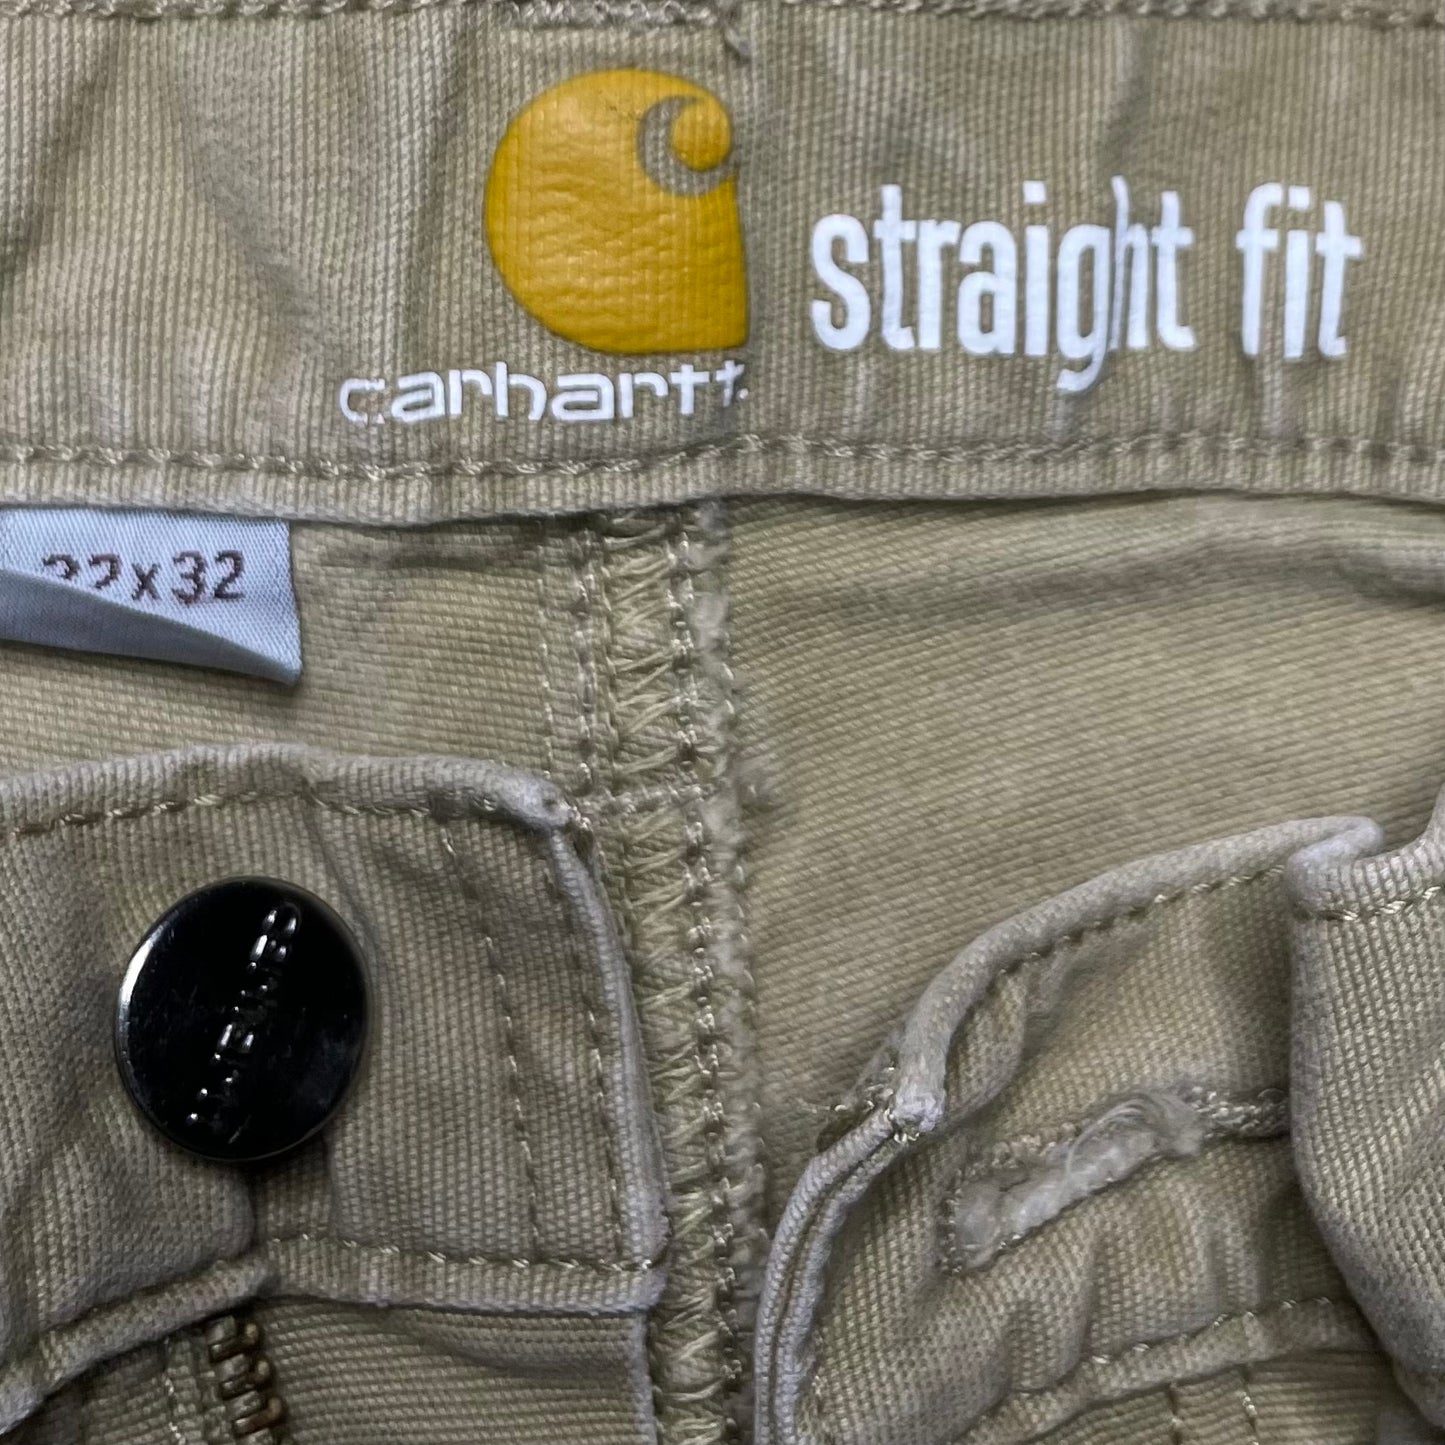 Carhartt Straight Fit Jeans (32x32)